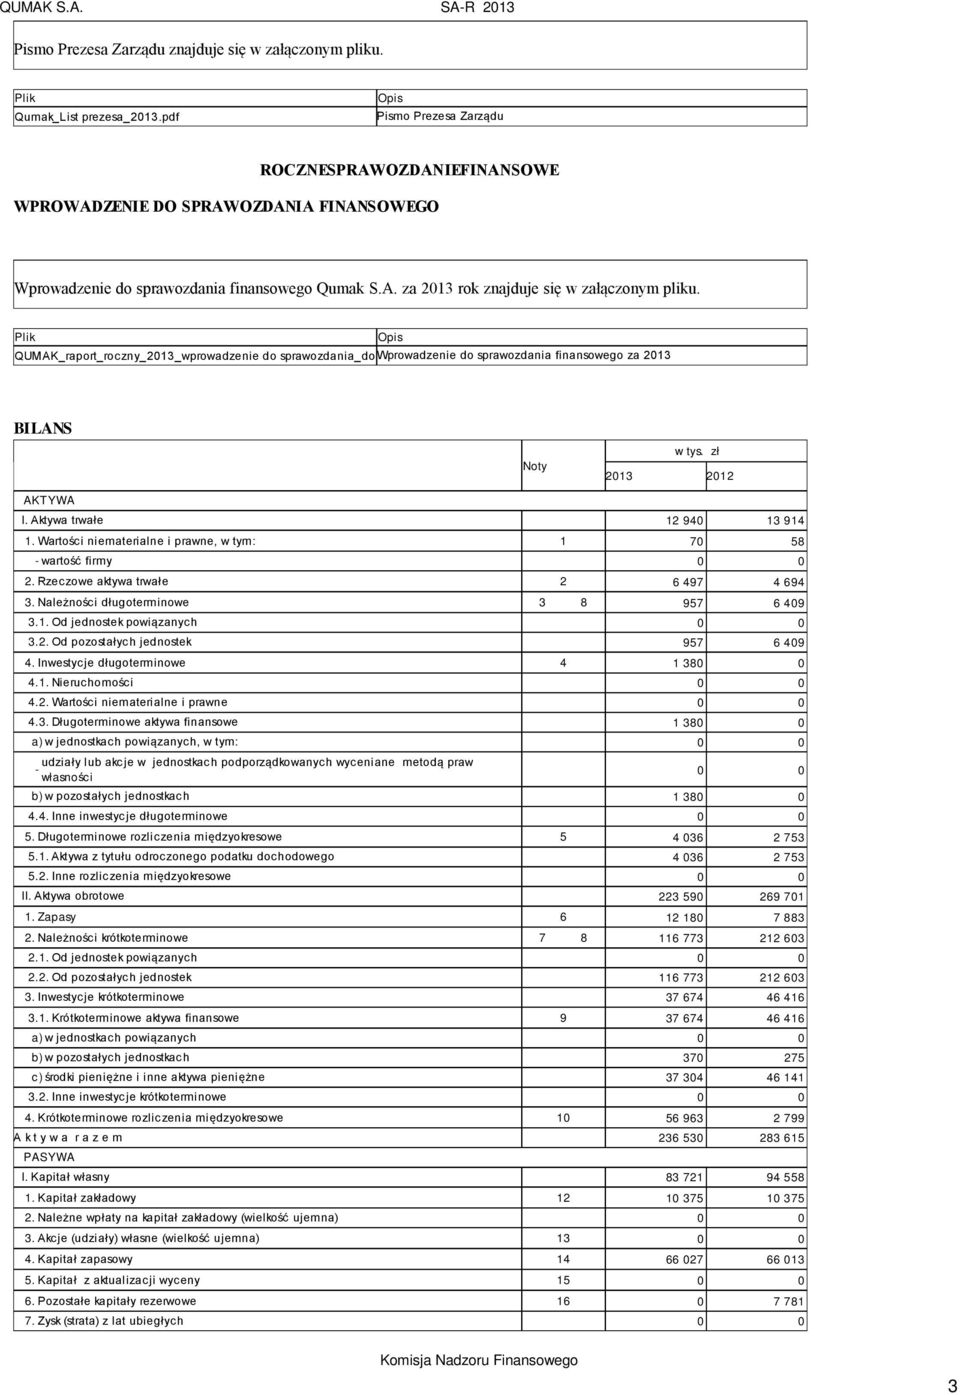 Plik QUMAK_raport_roczny_2013_wprowadzenie do sprawozdania_do Wprowadzenie raportu.pdf do sprawozdania finansowego za 2013 Opis BILANS Noty AKTYWA I. Aktywa trwałe 12 940 13 914 1.